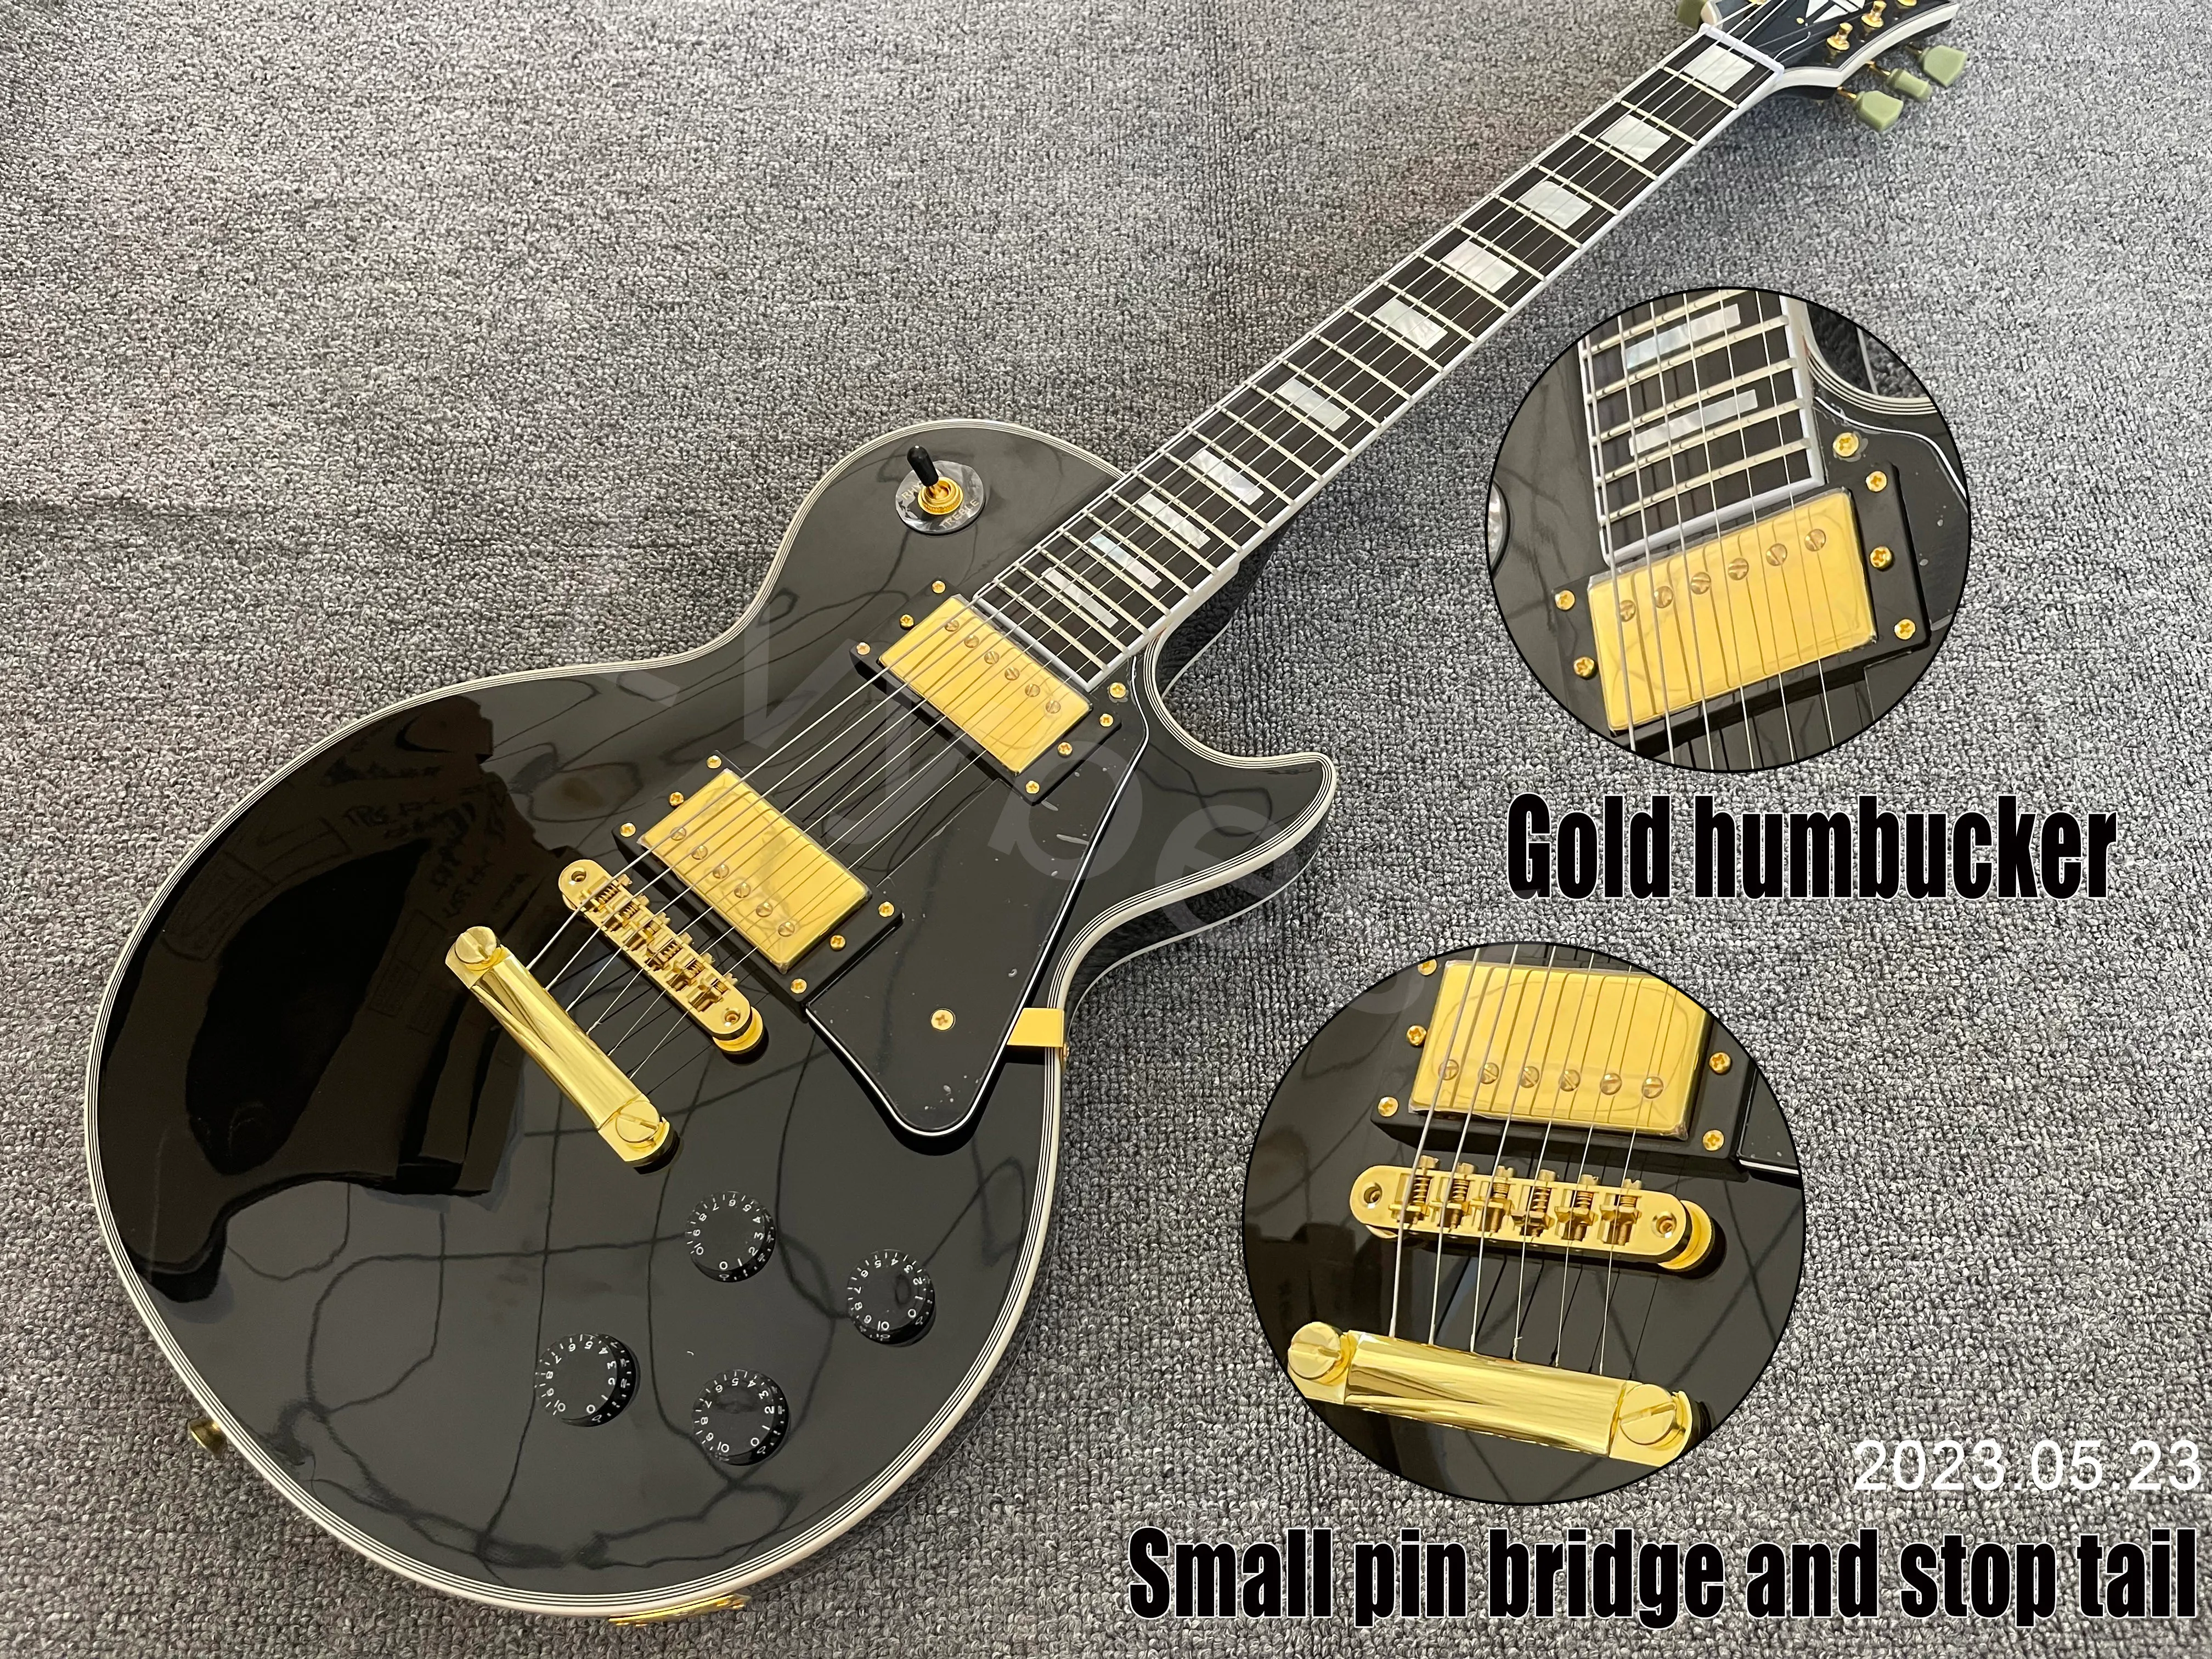 E-Gitarre Ebenholz-Griffbrett, solide schwarze Farbe, goldene Teile, HH-Tonabnehmer mit schwarzem Schlagbrett, kleiner Stiftbrücke und Knochenmutter